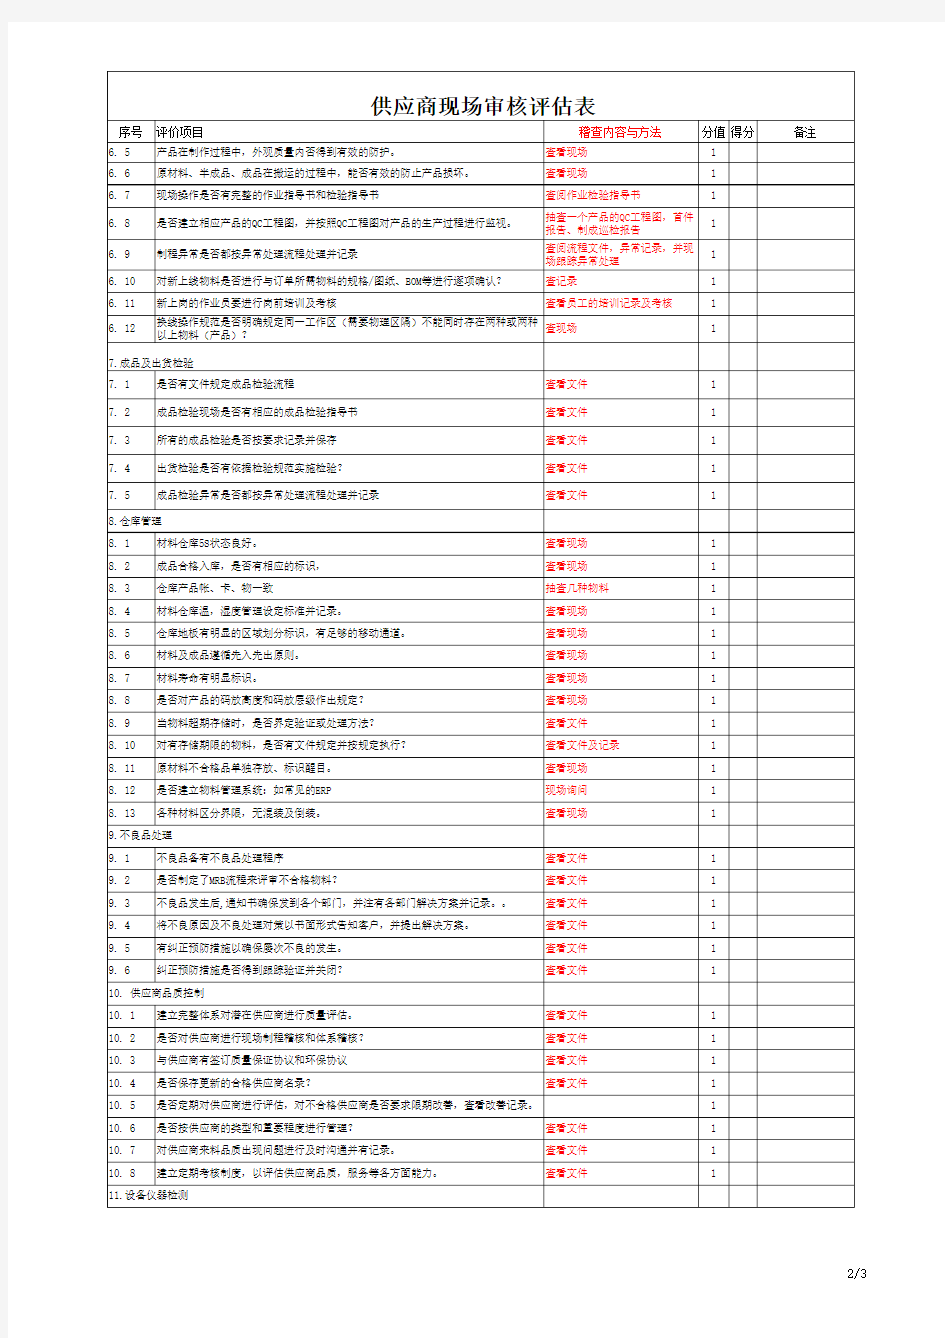 供应商现场审核评估表表